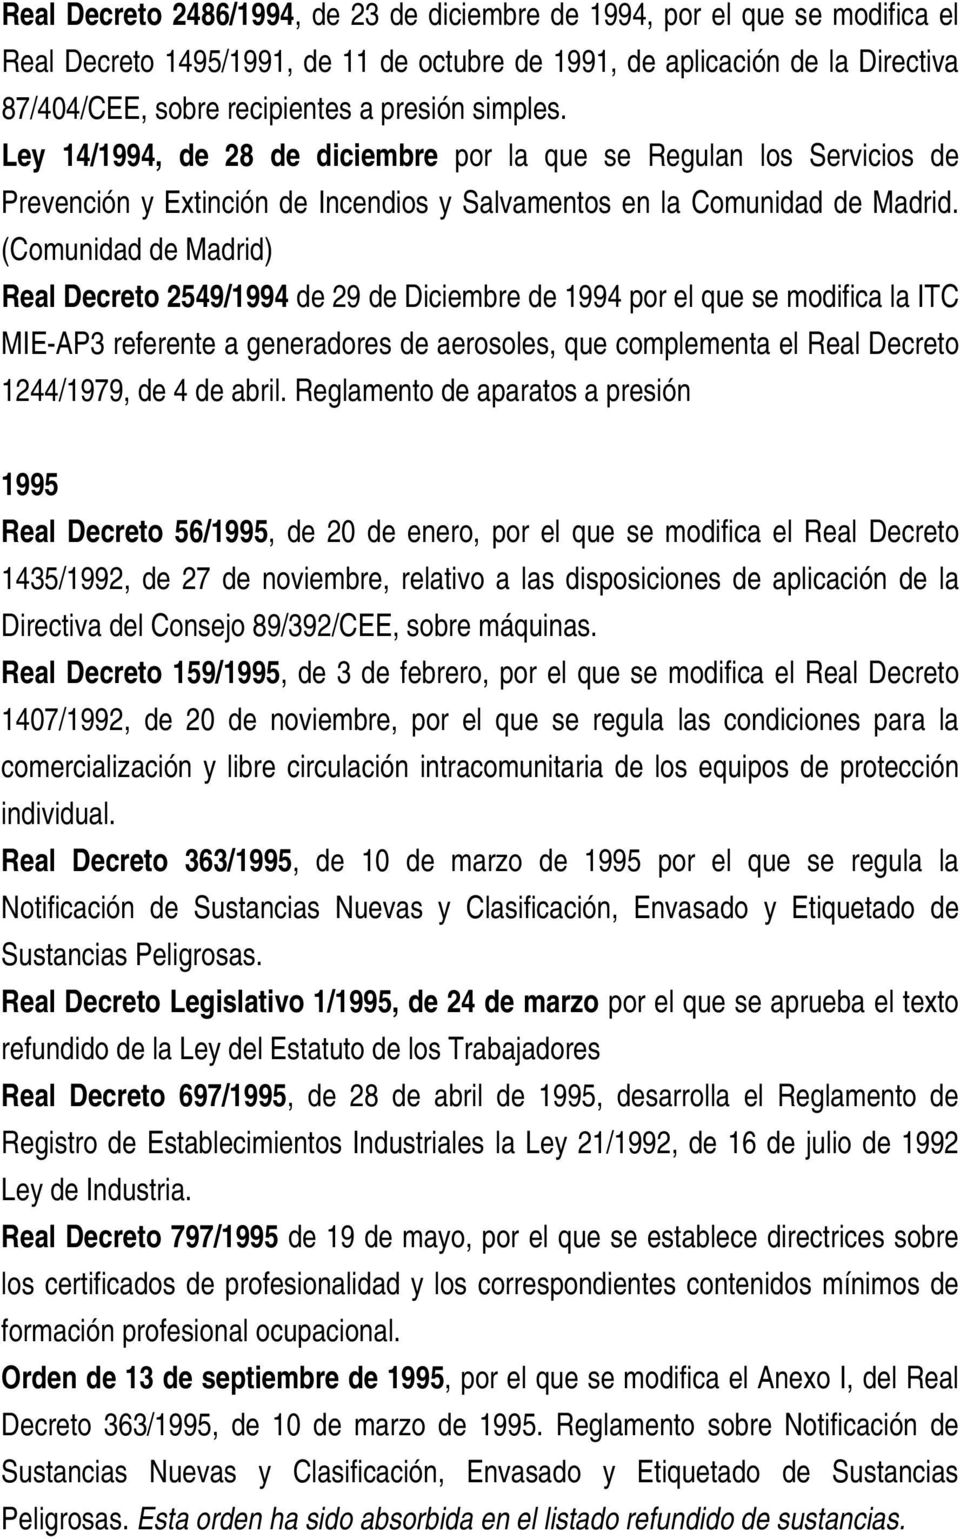 (Comunidad de Madrid) Real Decreto 2549/1994 de 29 de Diciembre de 1994 por el que se modifica la ITC MIE-AP3 referente a generadores de aerosoles, que complementa el Real Decreto 1244/1979, de 4 de